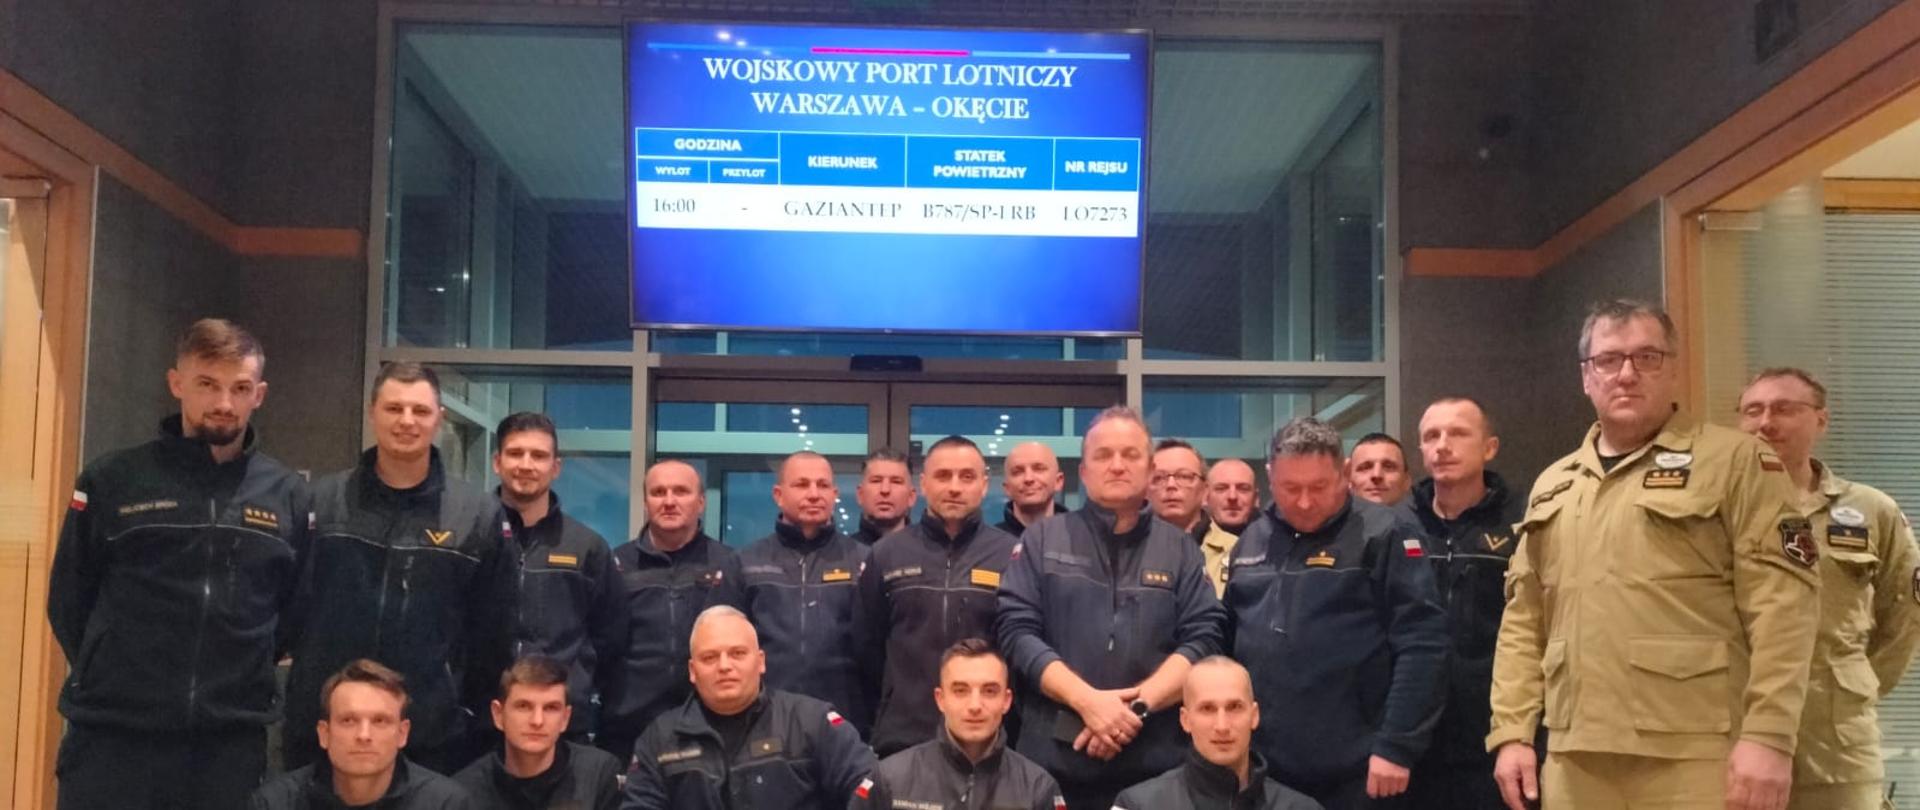 Grupa małopolskich strażaków na lotnisku.